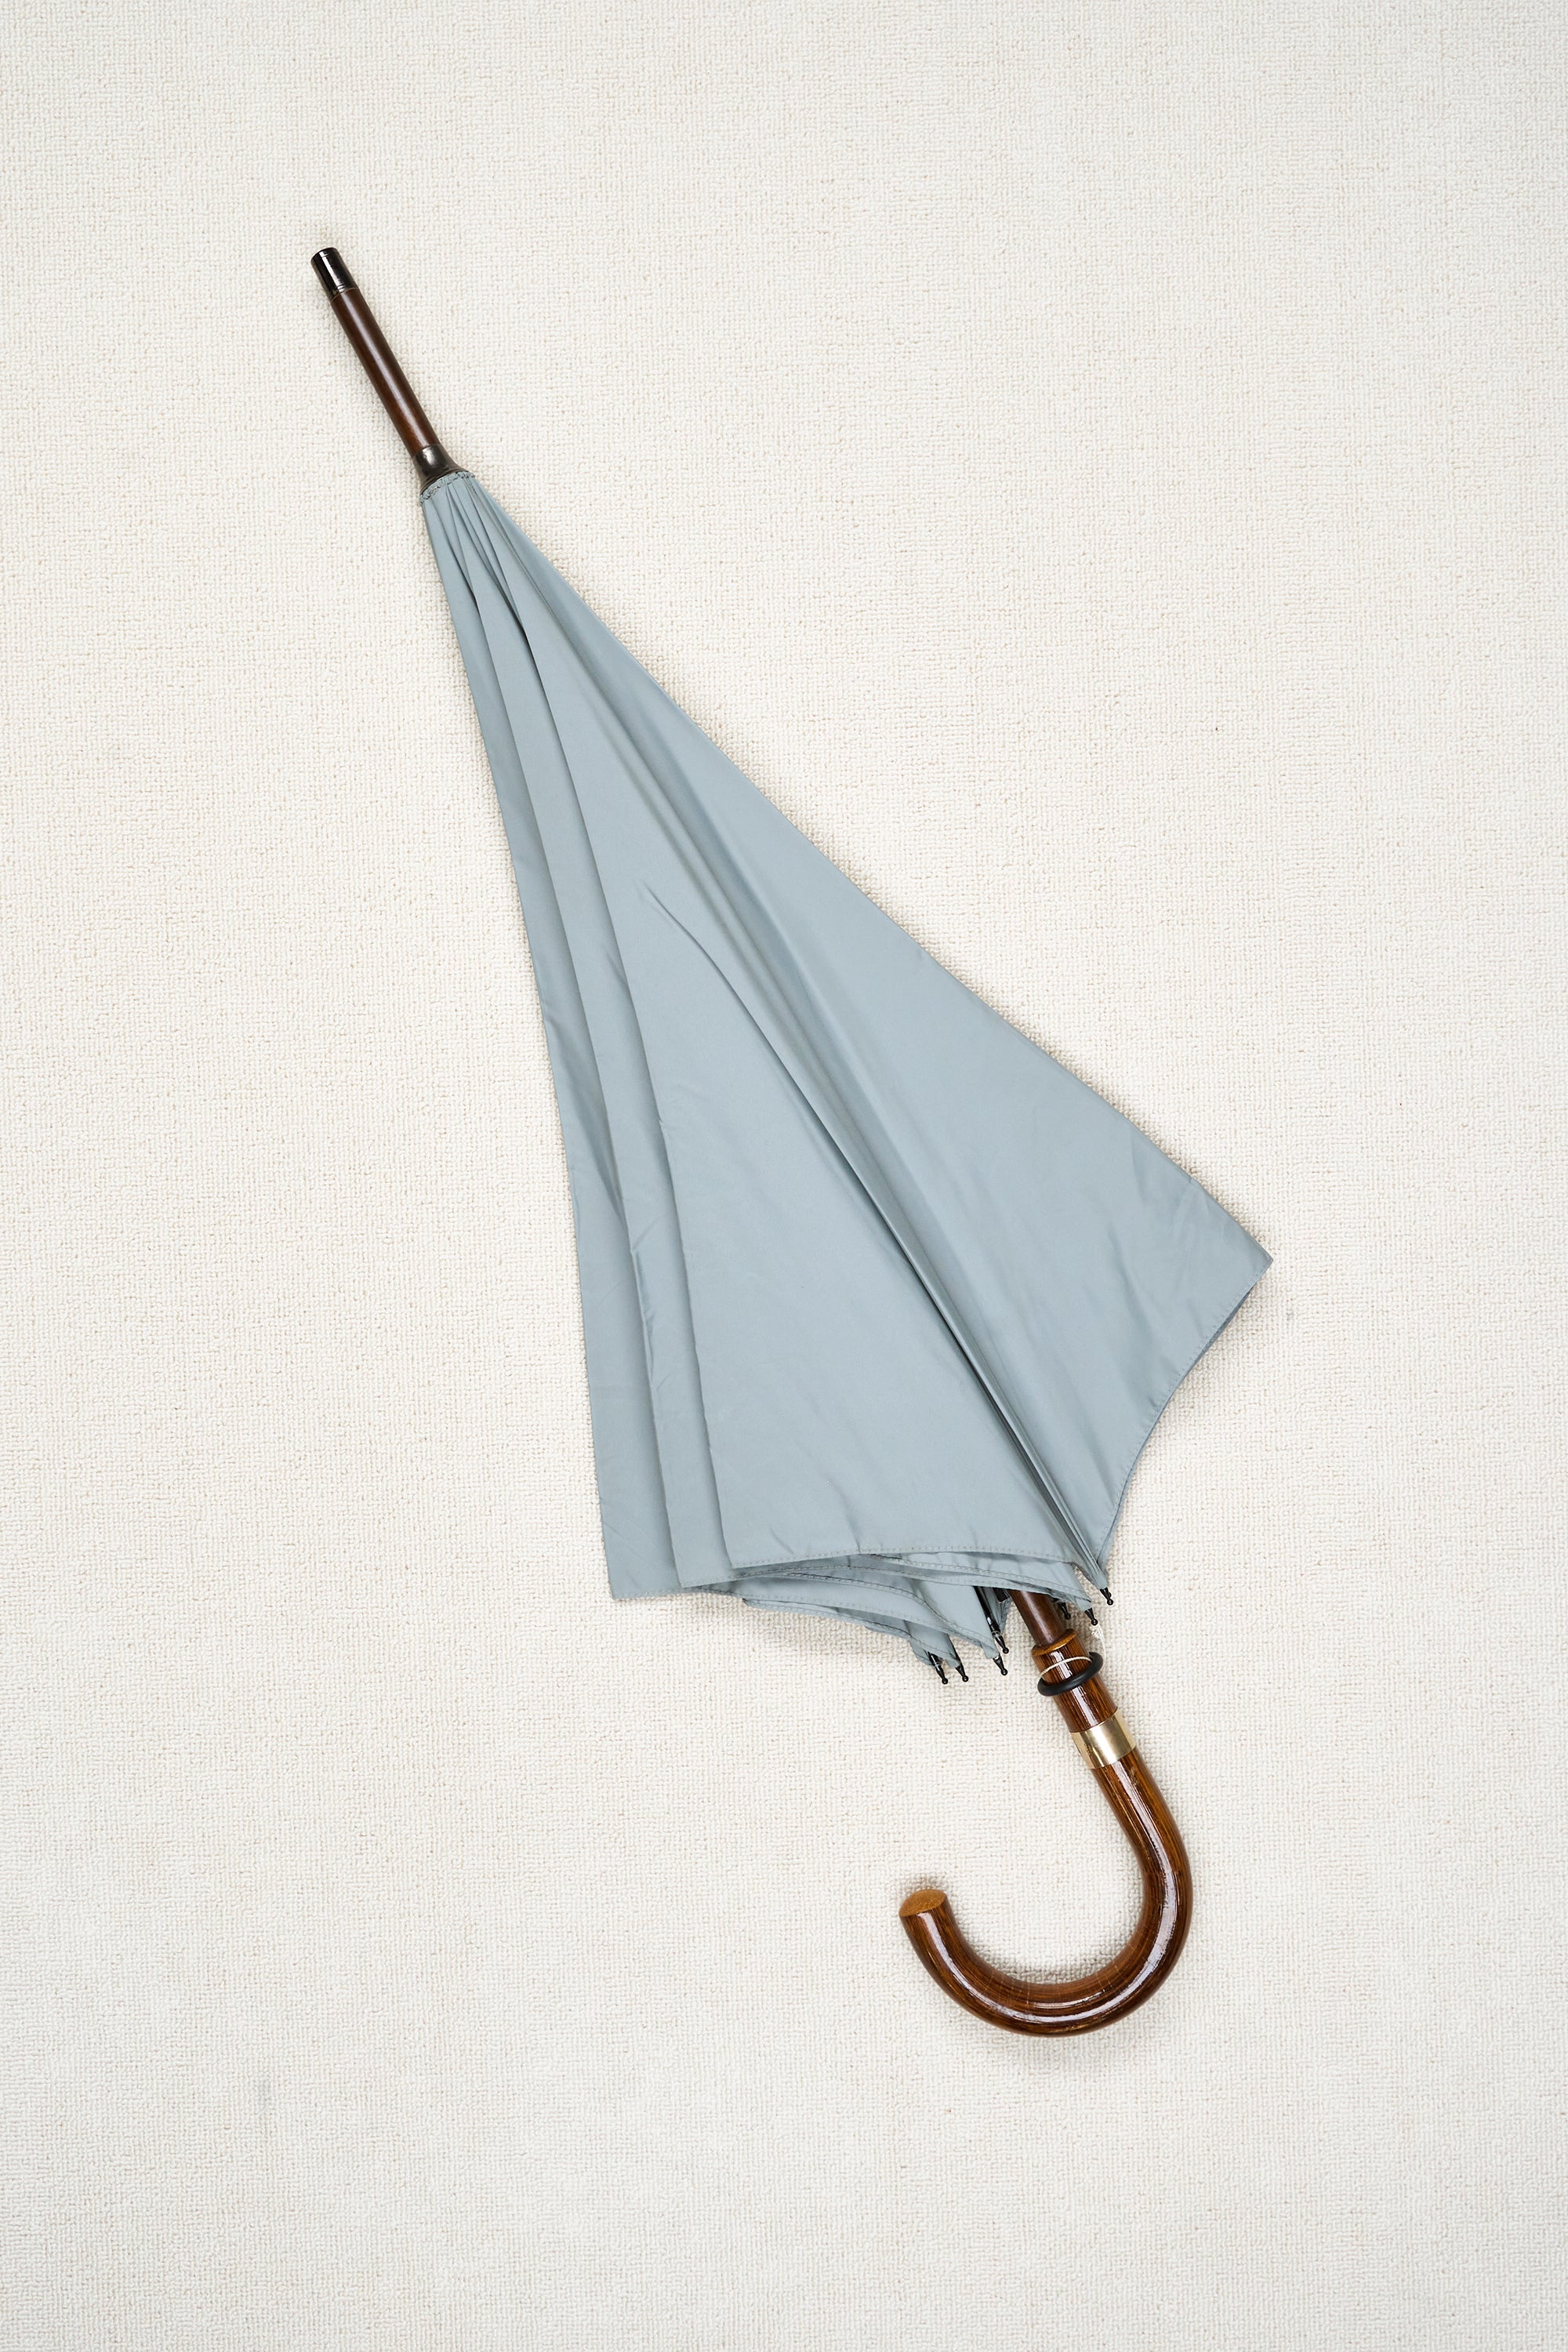 Fox Umbrellas Light Grey GS5GC Calma Handle Rolled Gold Collar Umbrella *sample*